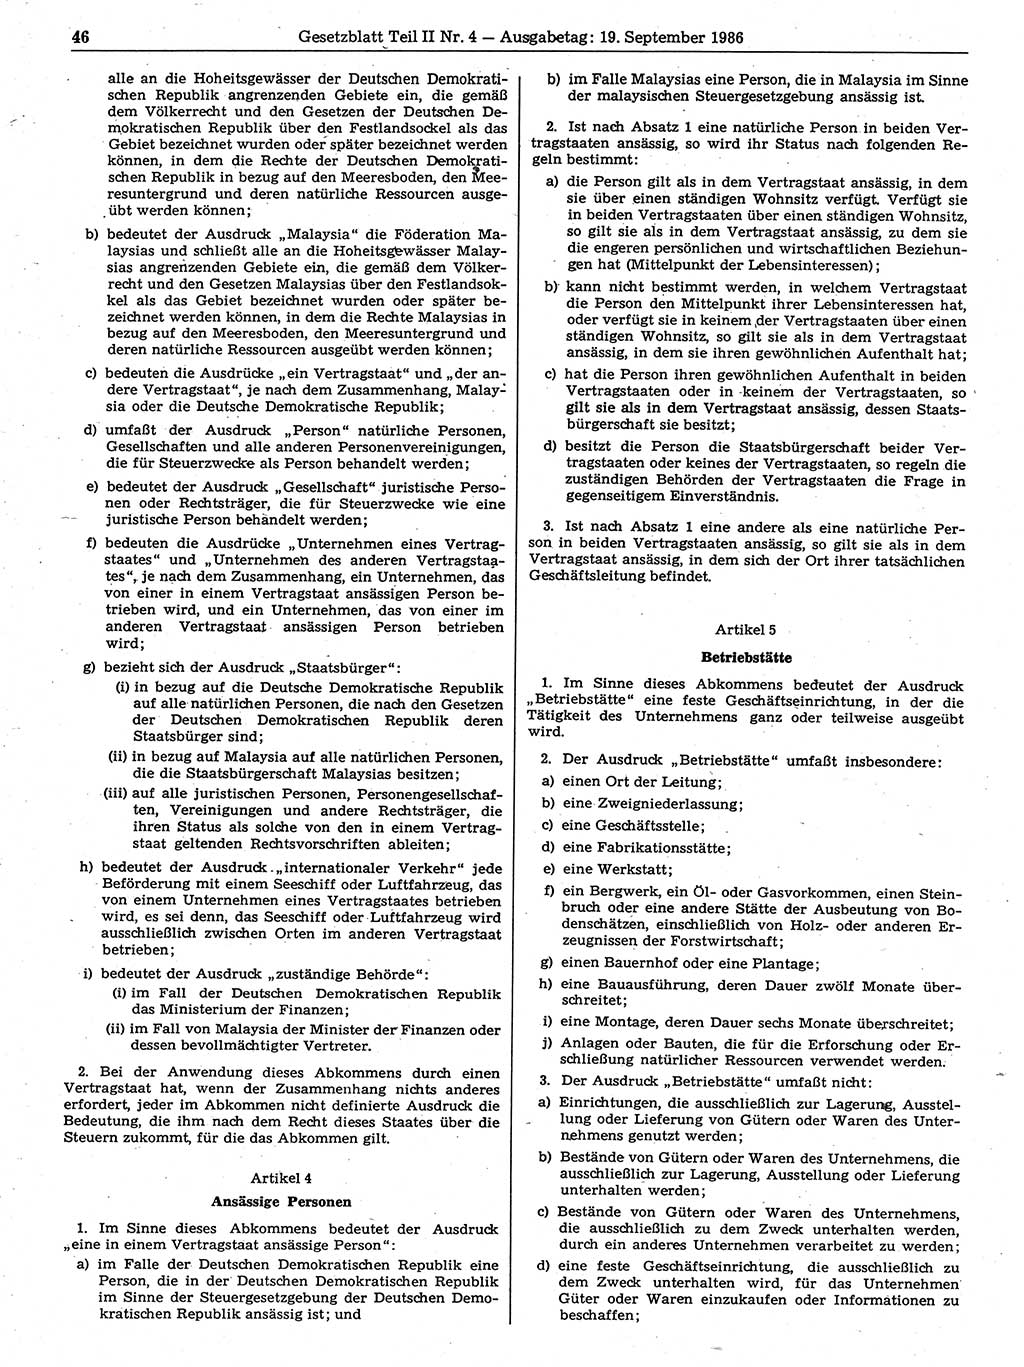 Gesetzblatt (GBl.) der Deutschen Demokratischen Republik (DDR) Teil ⅠⅠ 1986, Seite 46 (GBl. DDR ⅠⅠ 1986, S. 46)